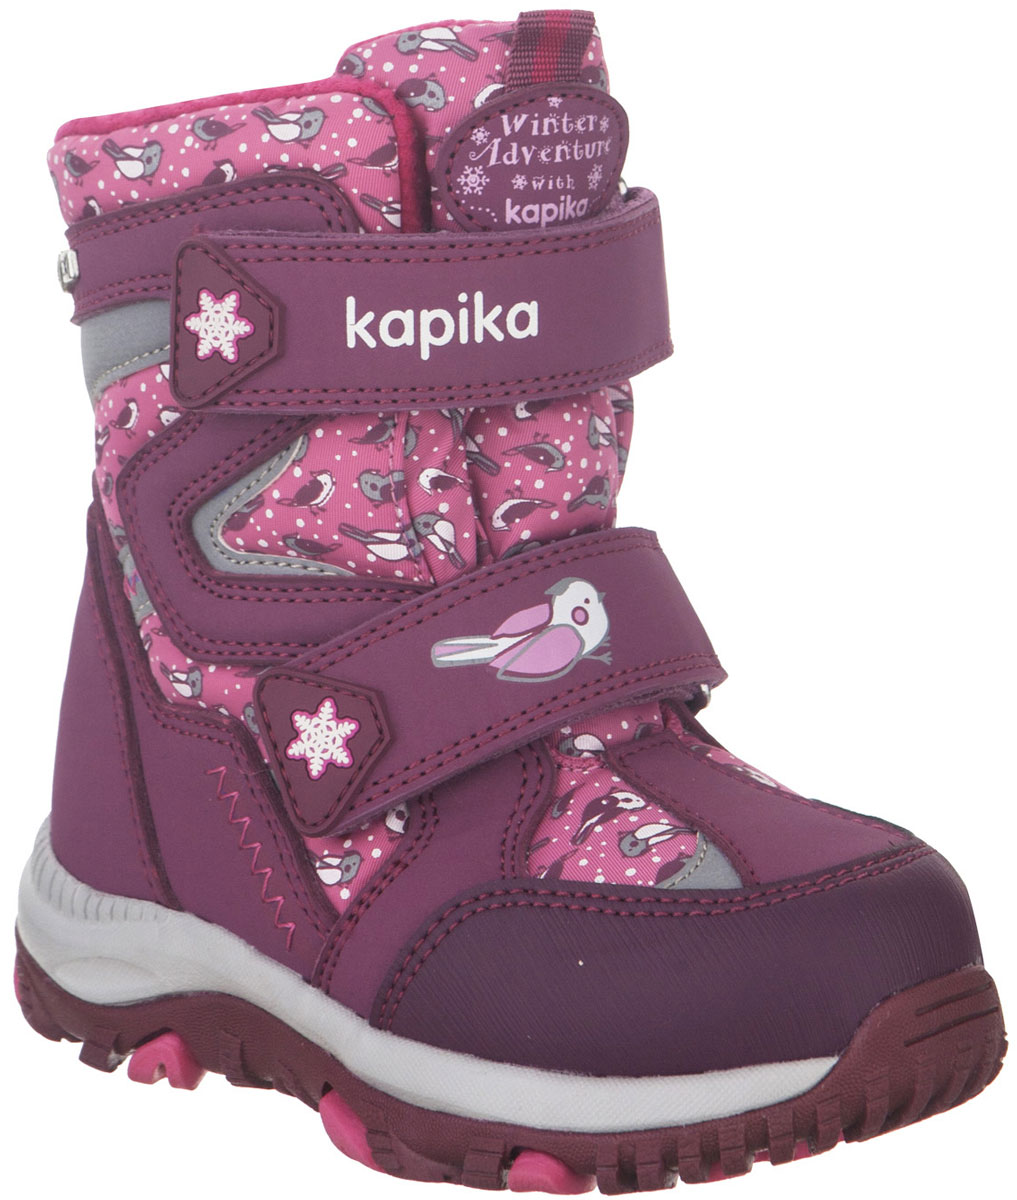 Ботинки для девочки Kapika, цвет: фиолетовый, розовый. 41222-2. Размер 24